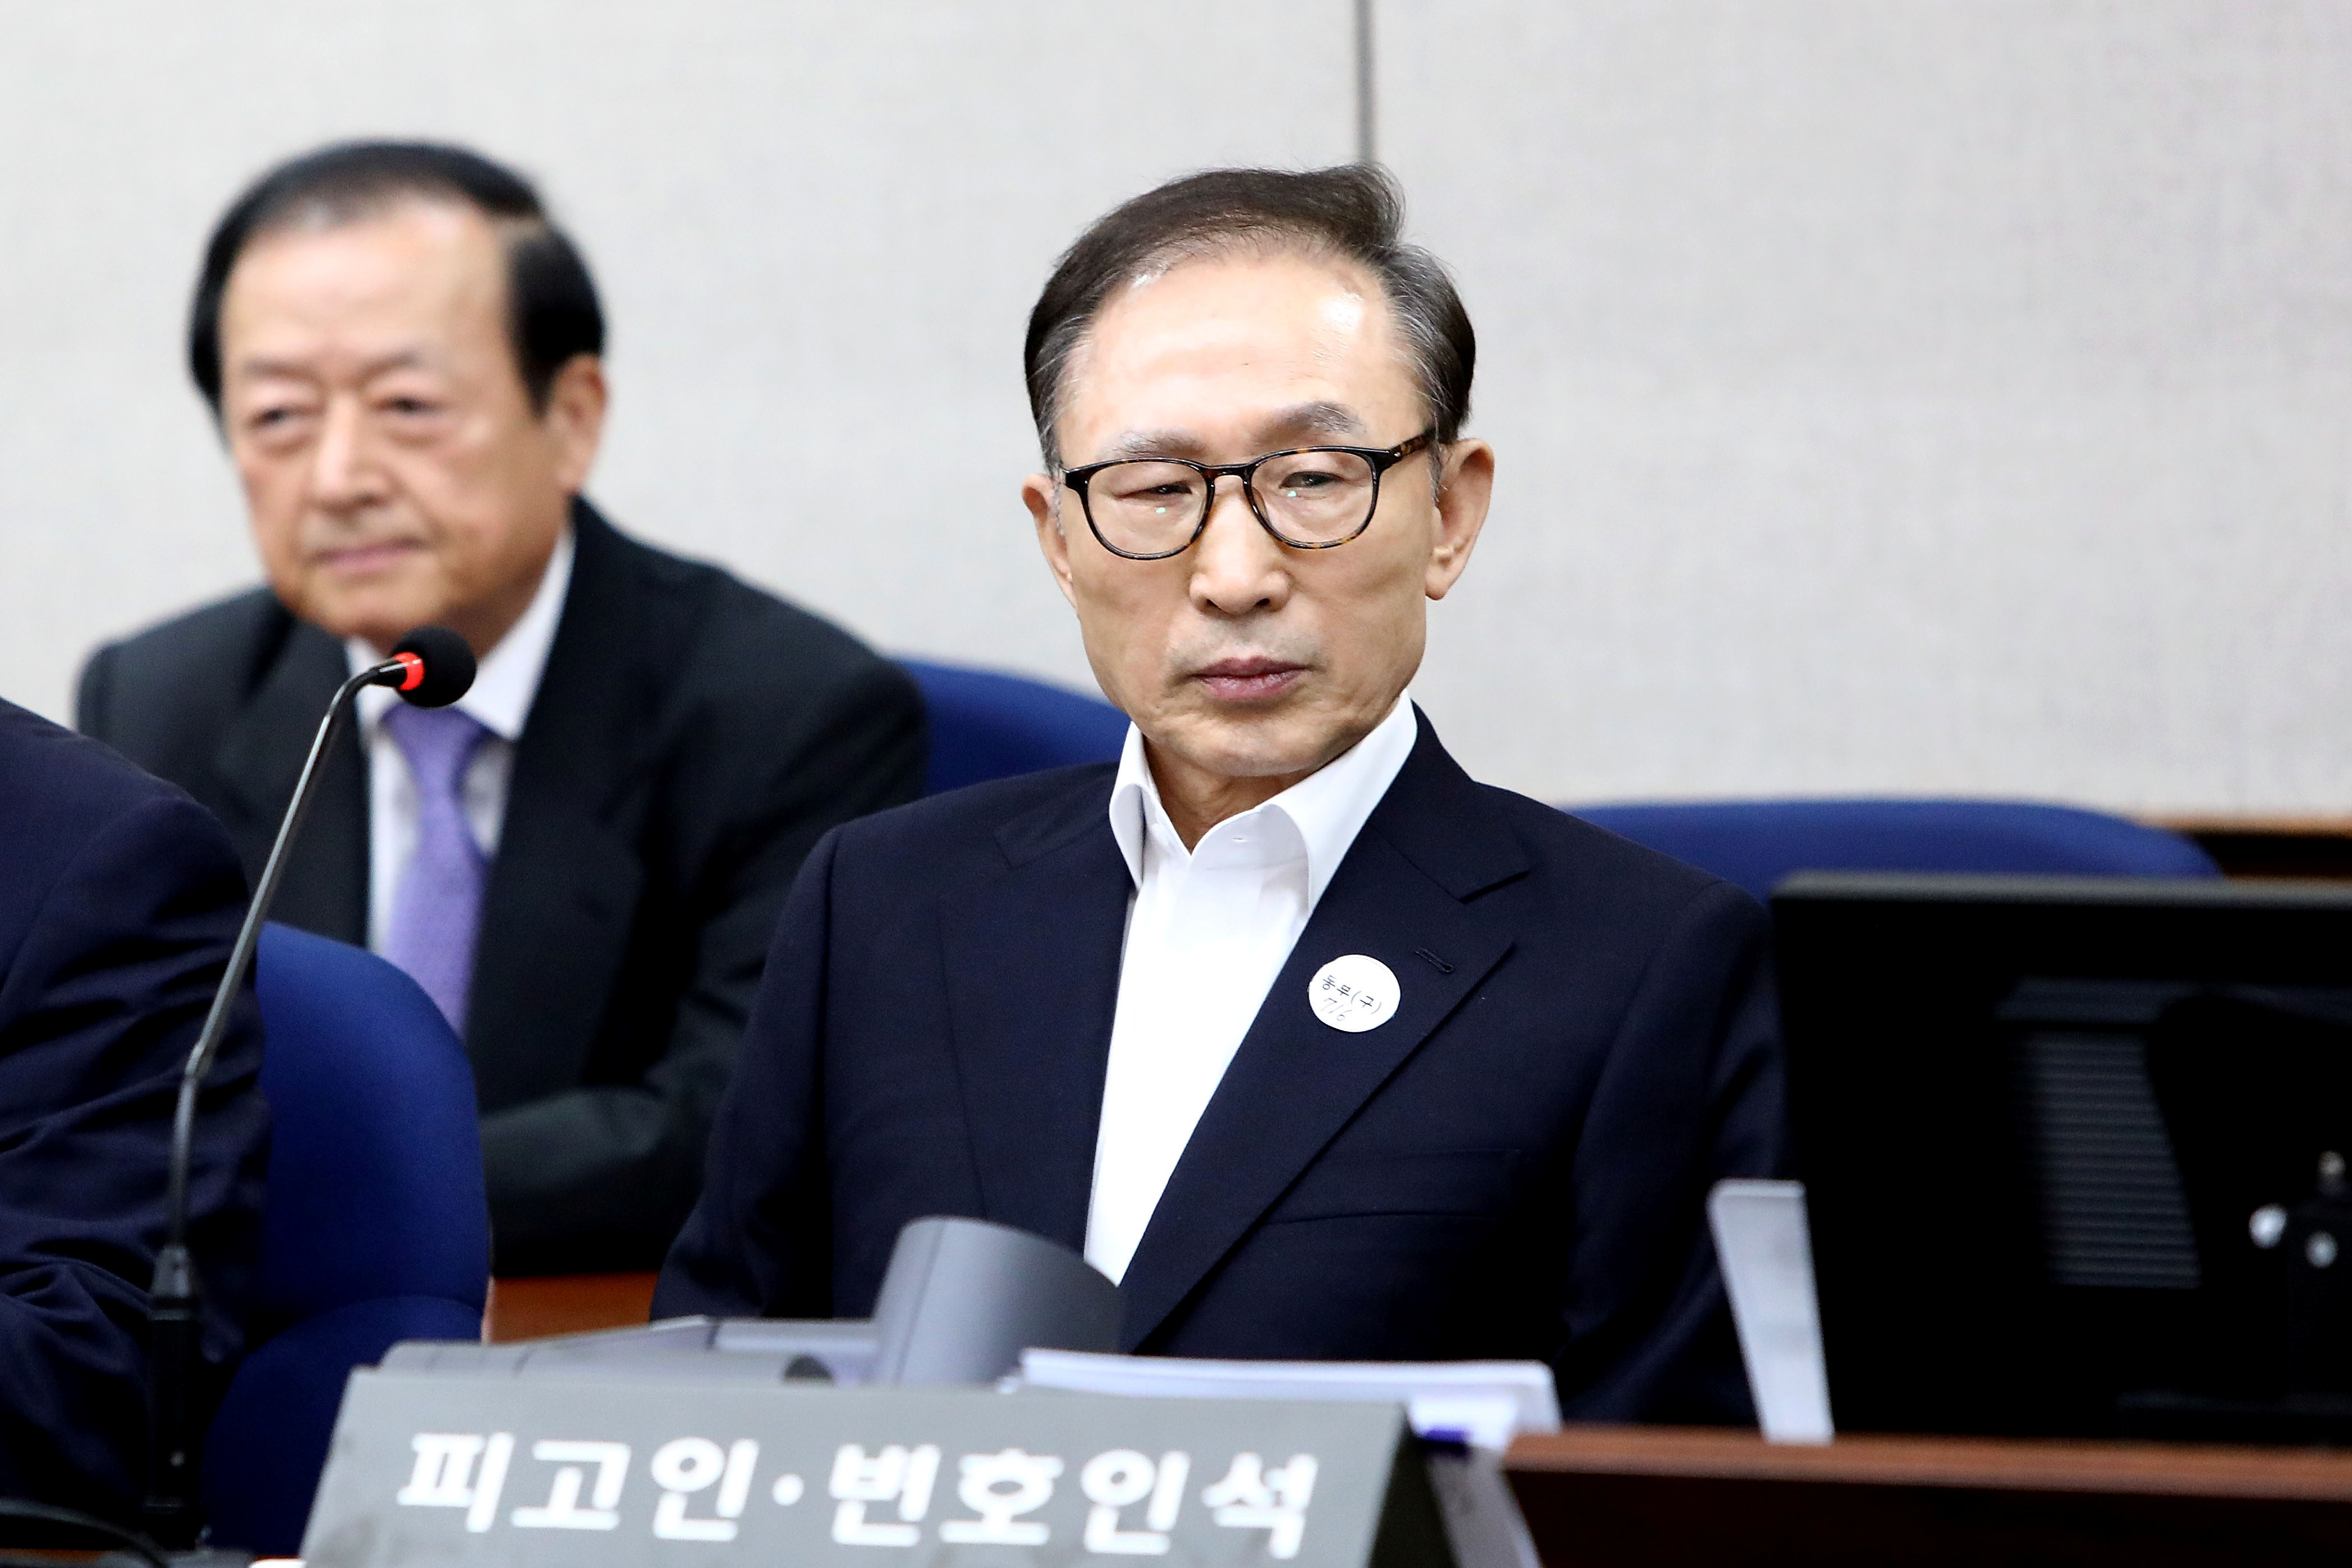 رئيس كوريا الجنوبية الأسبق يحضر أولى جلسات محاكمته